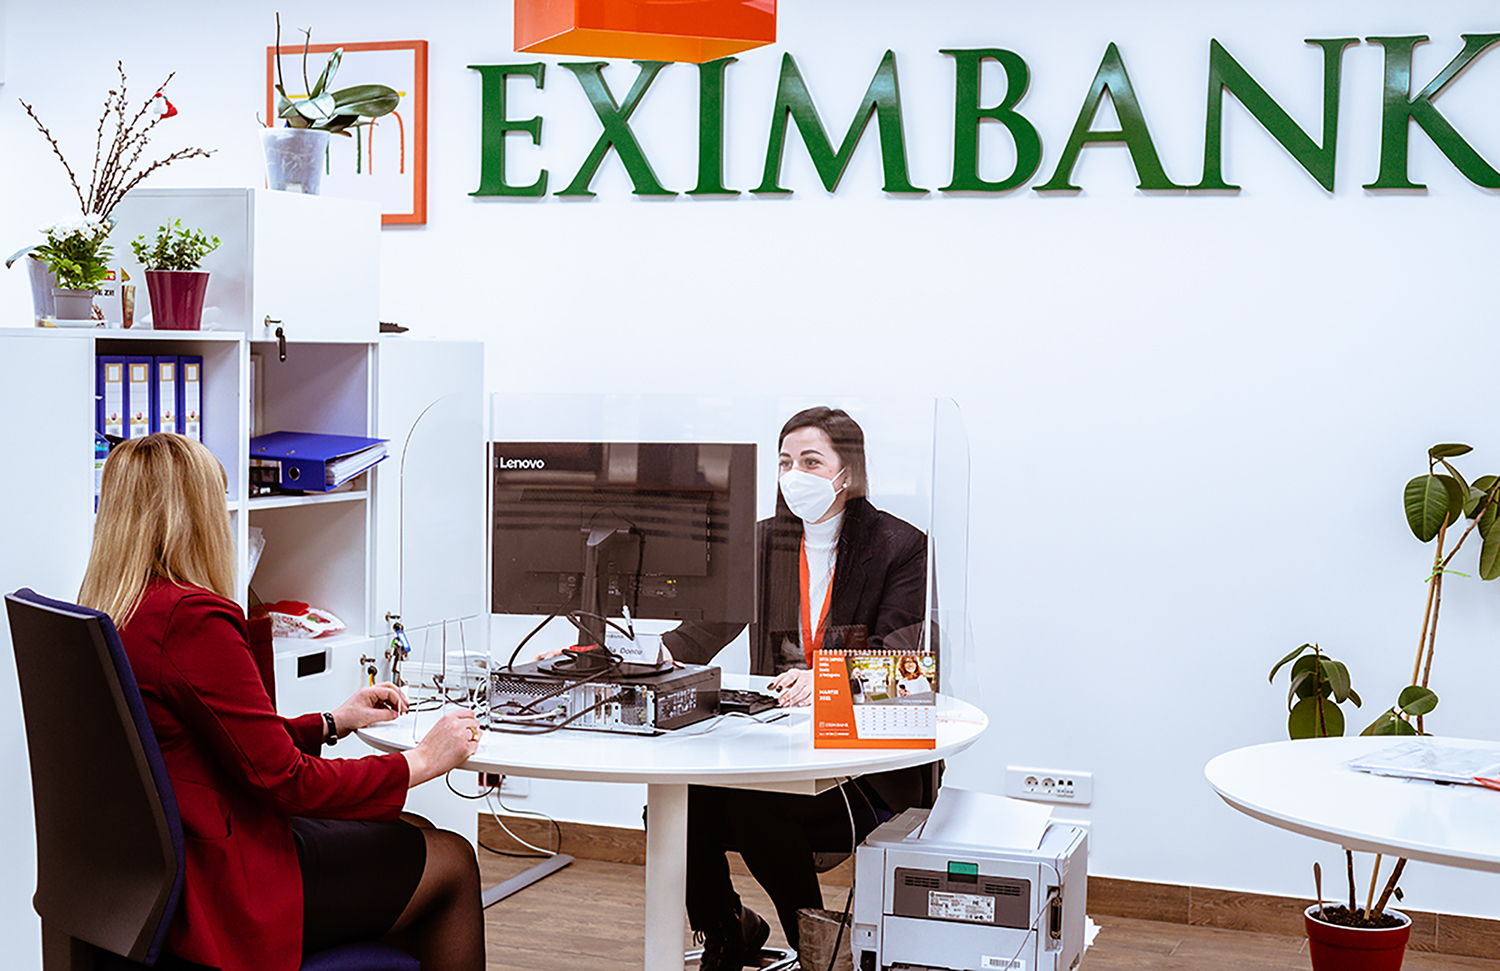 EXIMBANK își așteaptă clienții din nordul țării într-un nou sediu